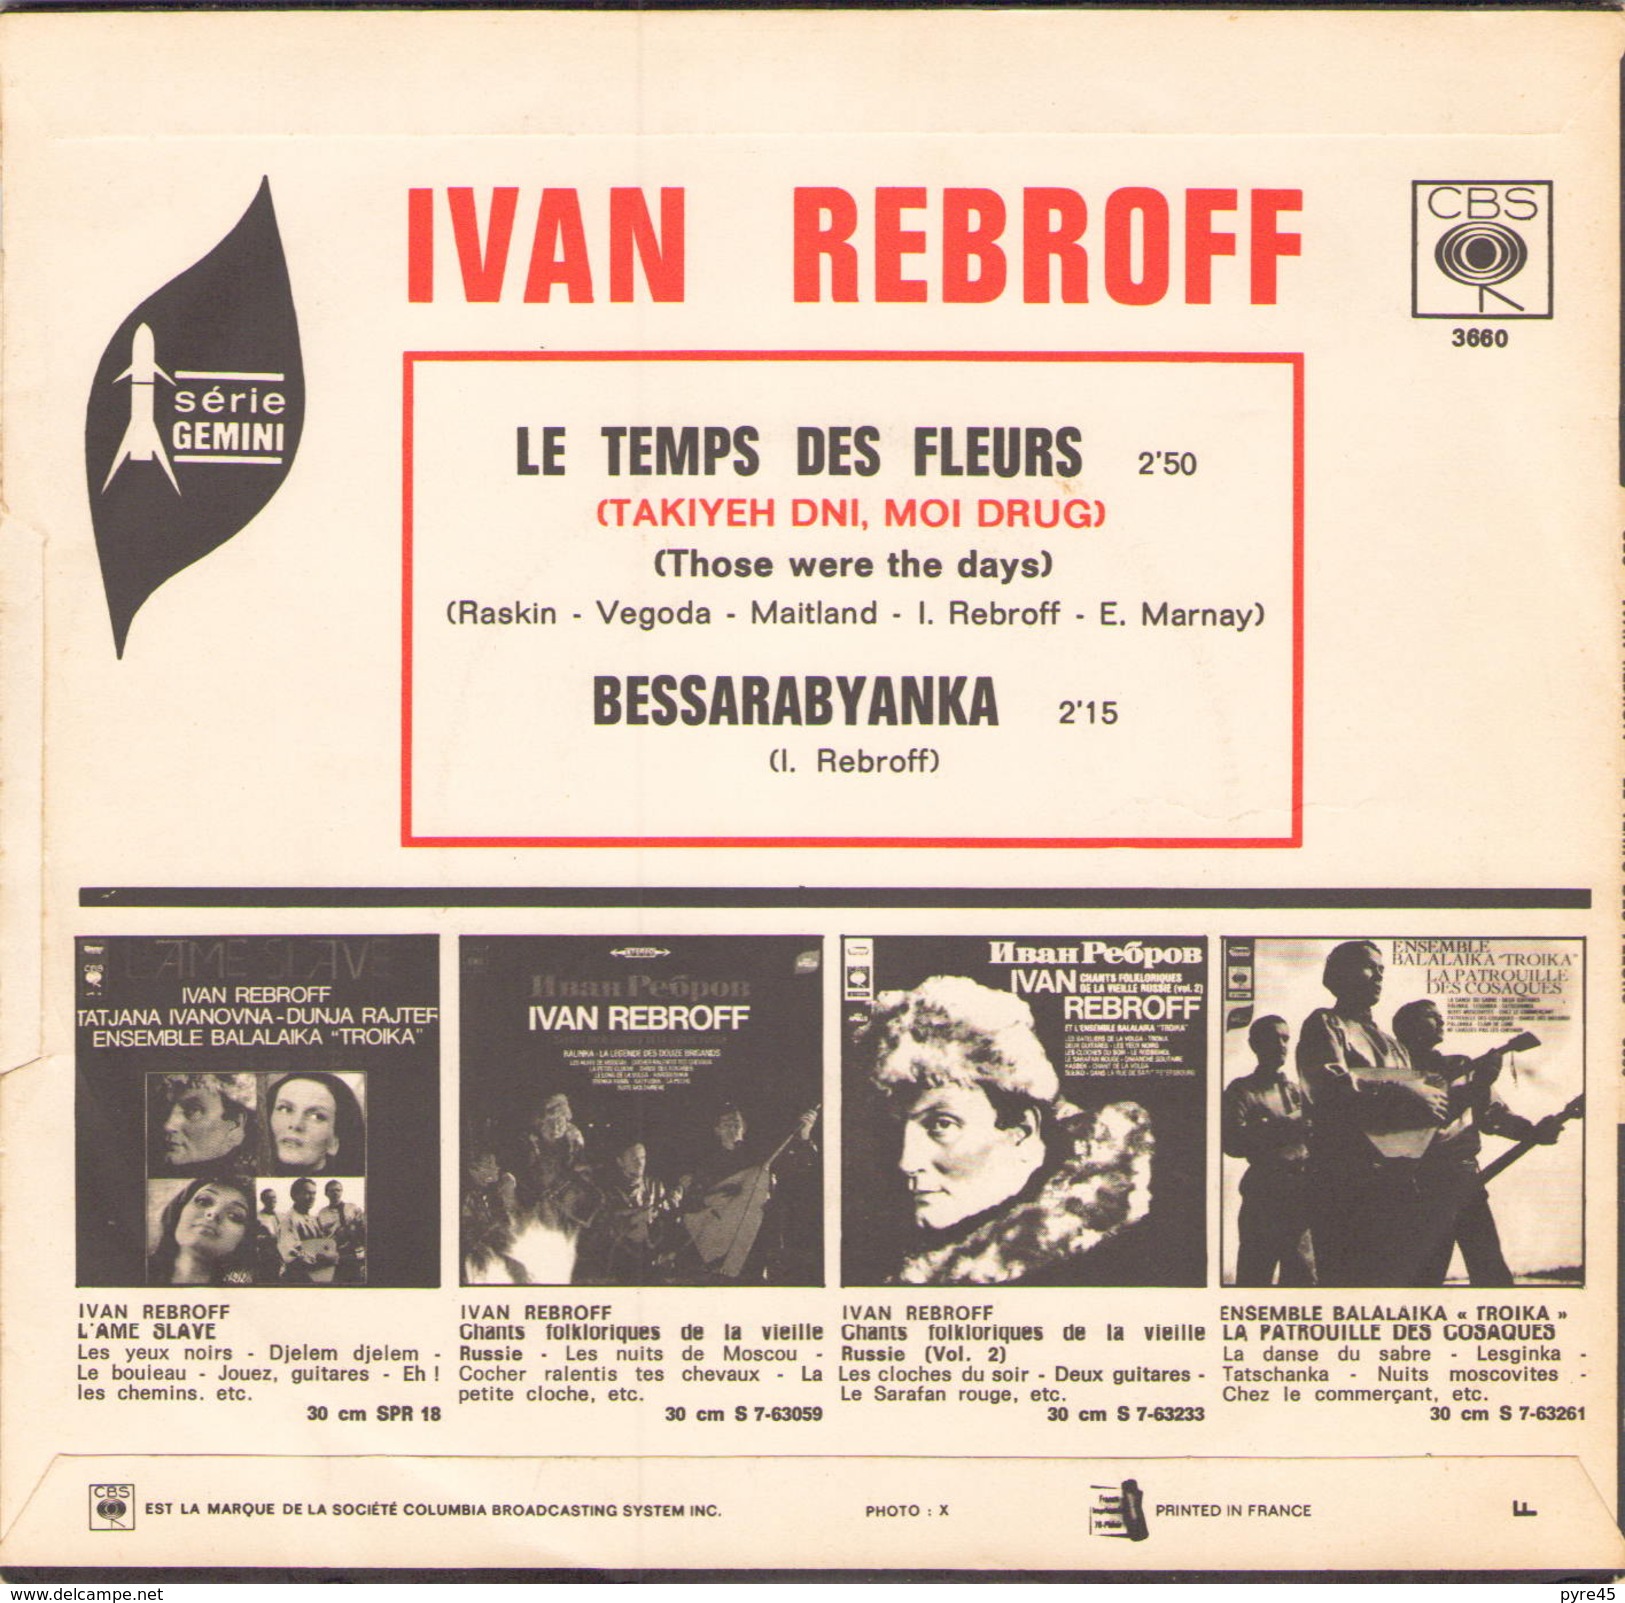 45 TOURS IVAN REBROFF CBS 3660 LE TEMPS DES FLEURS / BESSARABYANKA - Musiques Du Monde